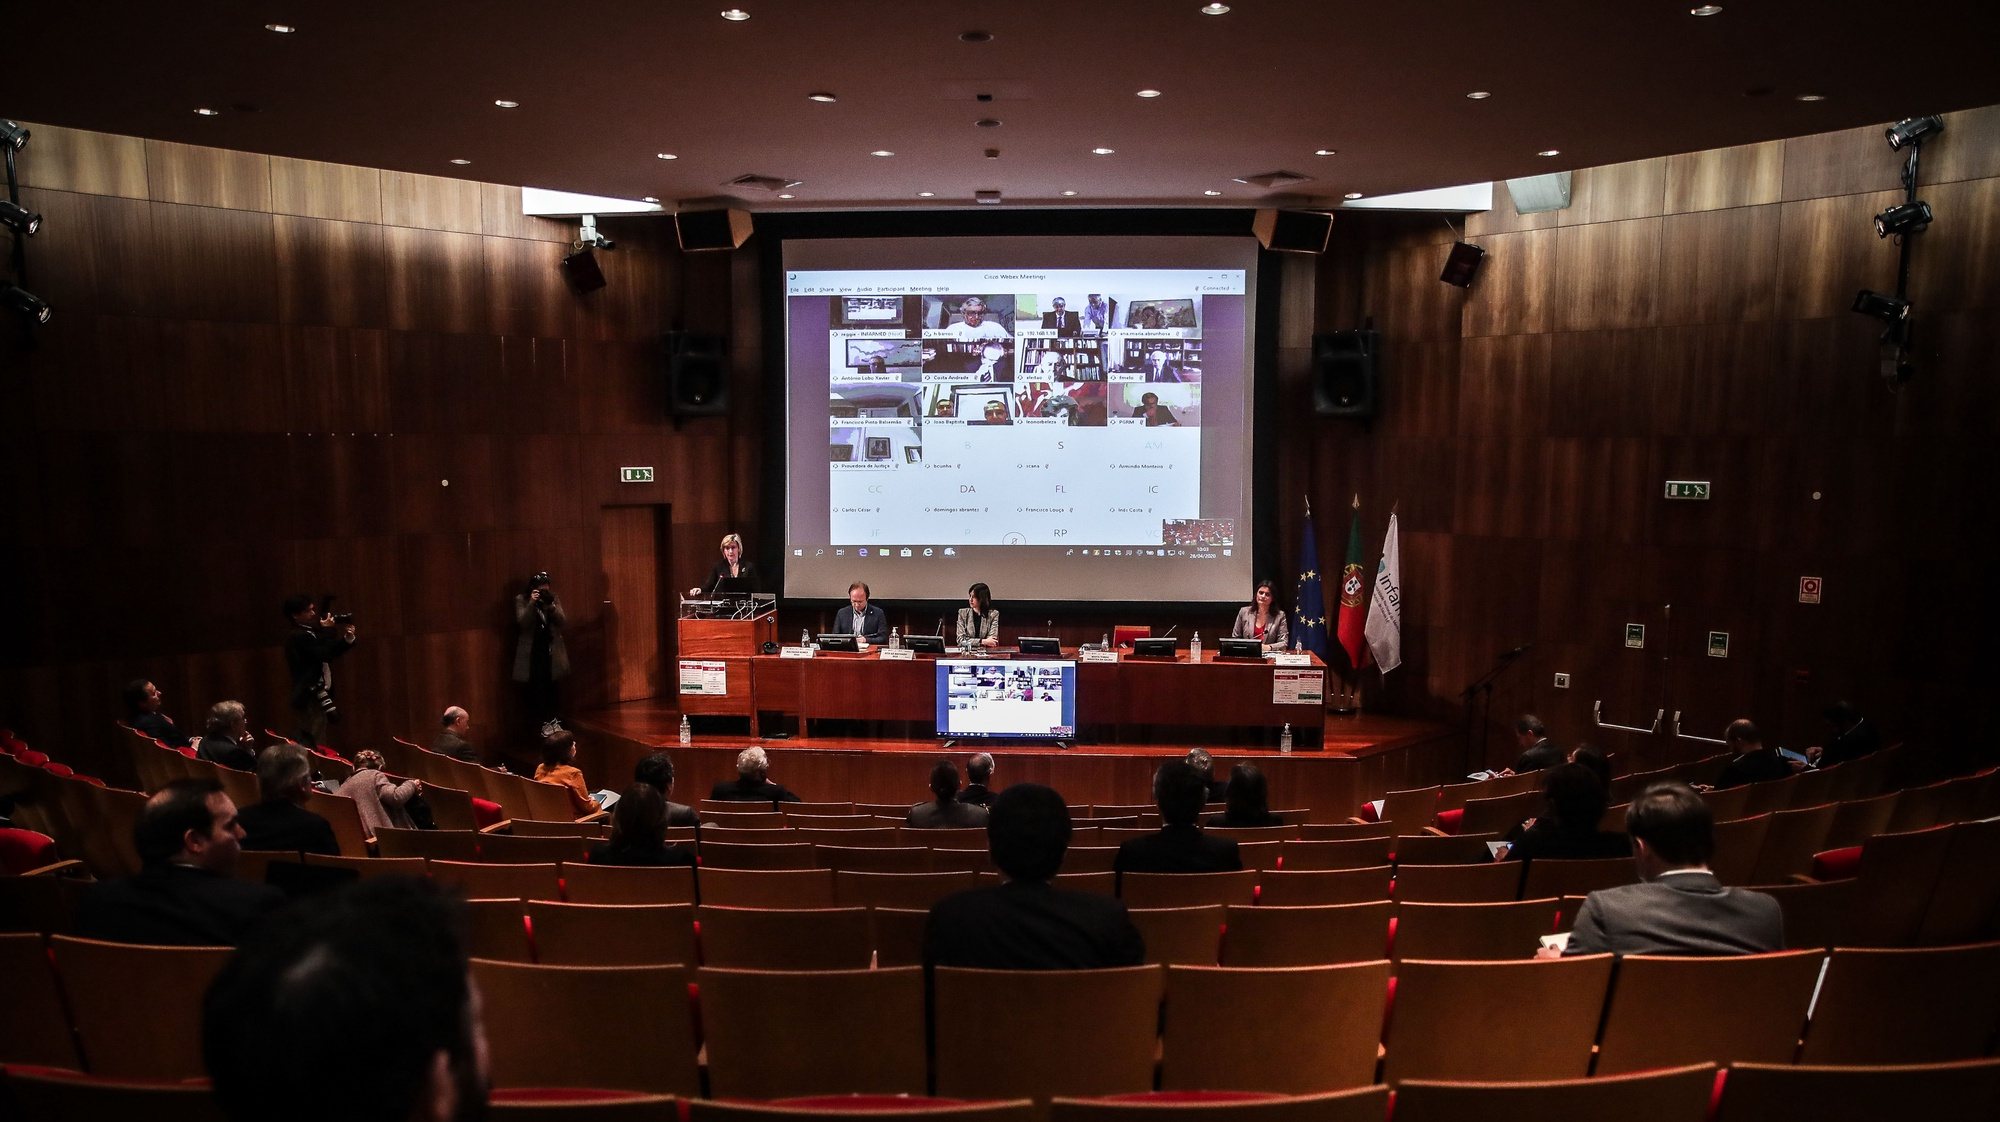 5.ª Sessão de apresentação “Situação epidemiológica da Covid-19 em Portugal”, na sede do Infarmed, em Lisboa, 28 de abril de 2020. MÁRIO CRUZ/LUSA